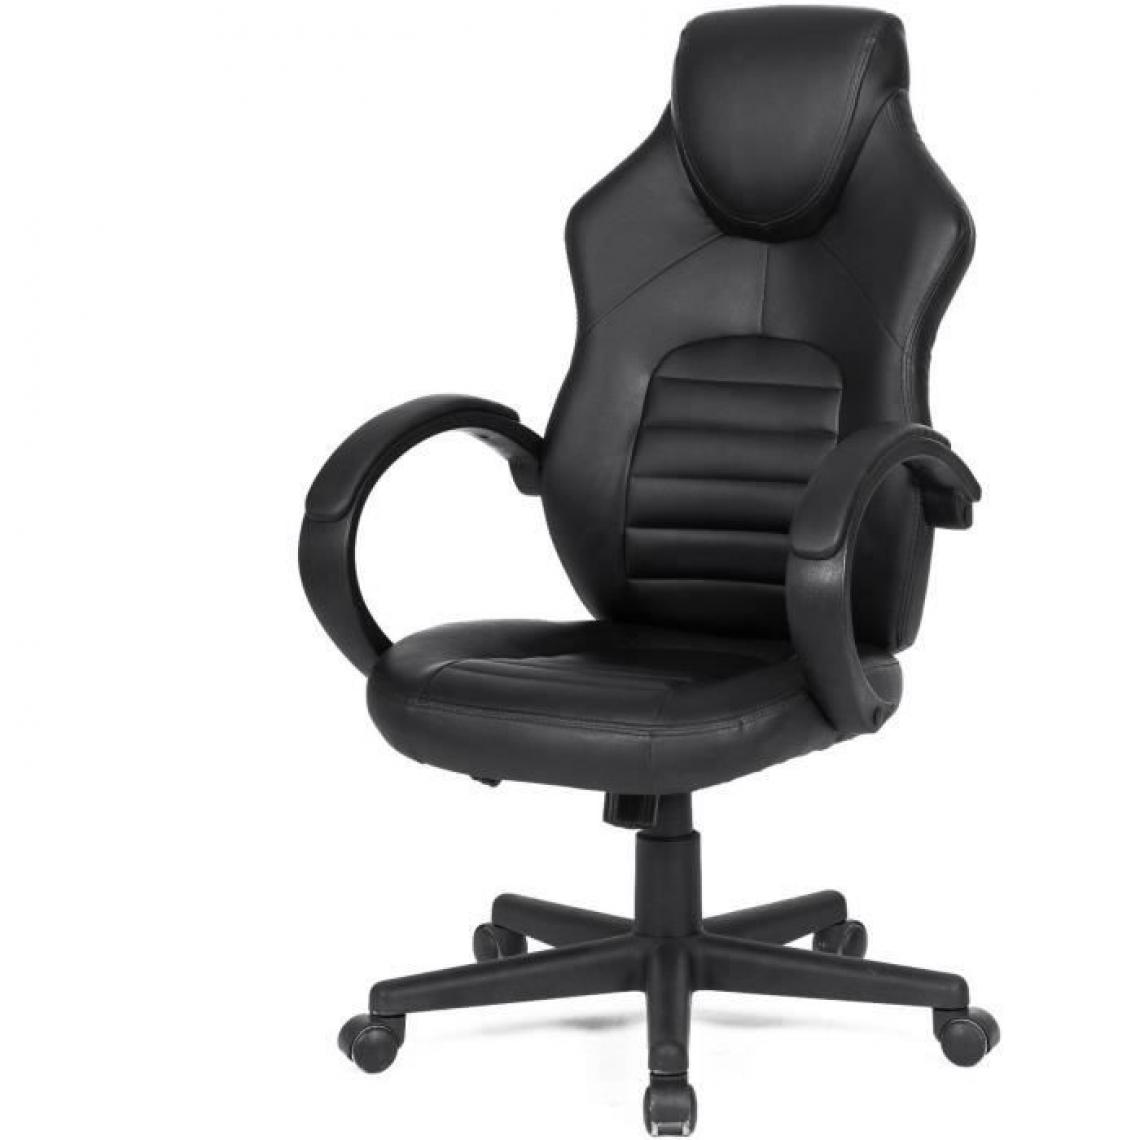 Cstore - Chaise de bureau gaming - Simili noir - L 58 x P 70 x H 98-116 cm - ARK - Chaises